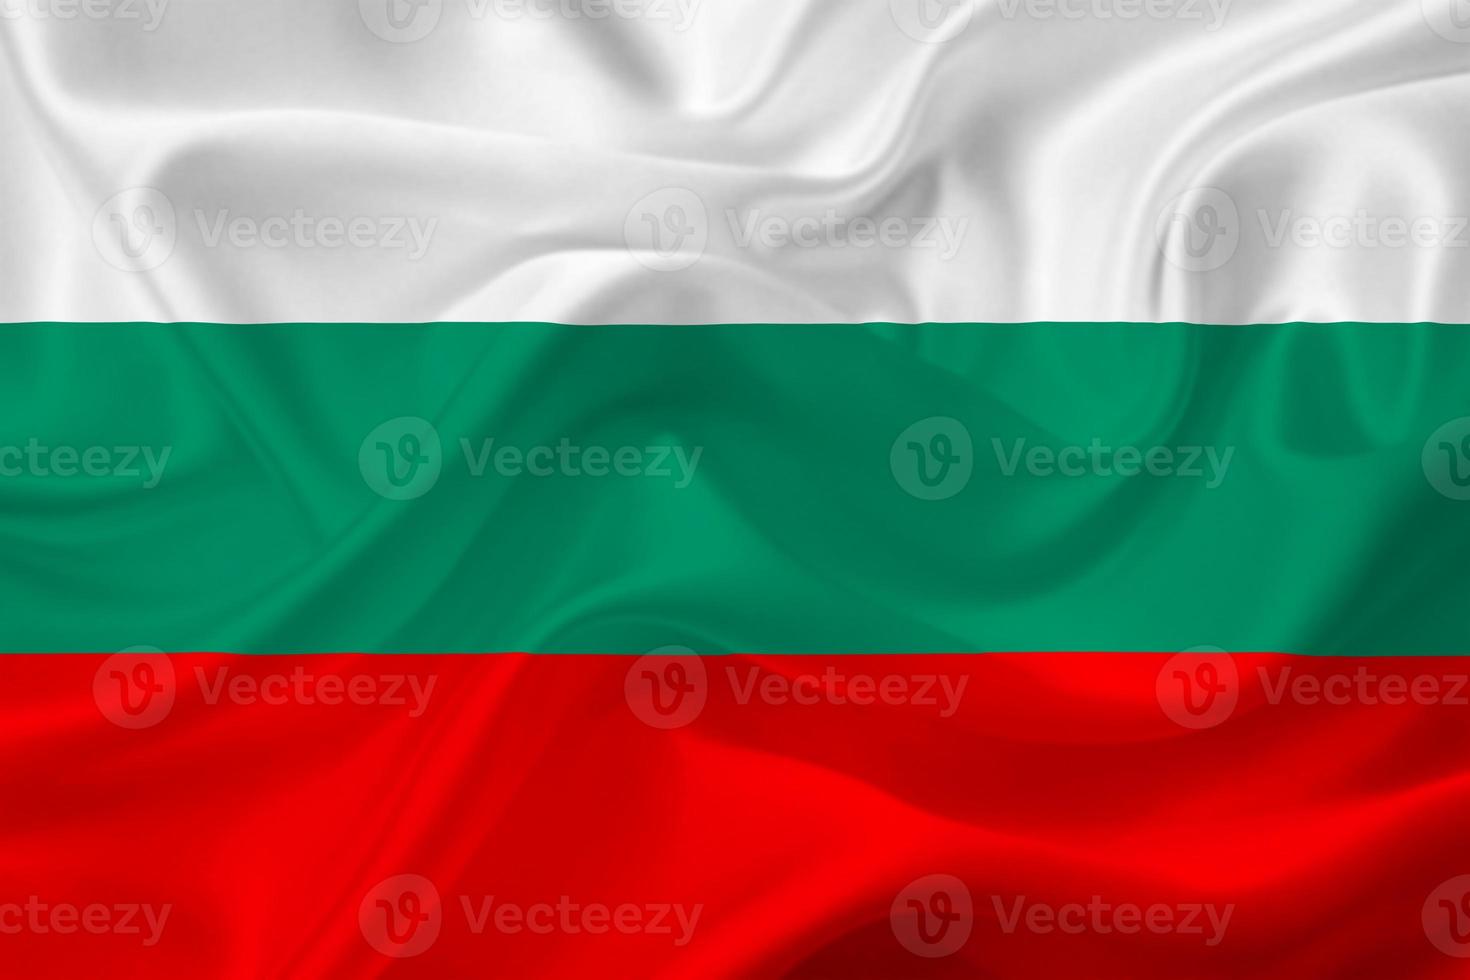 3d flagga av bulgarien på tyg foto